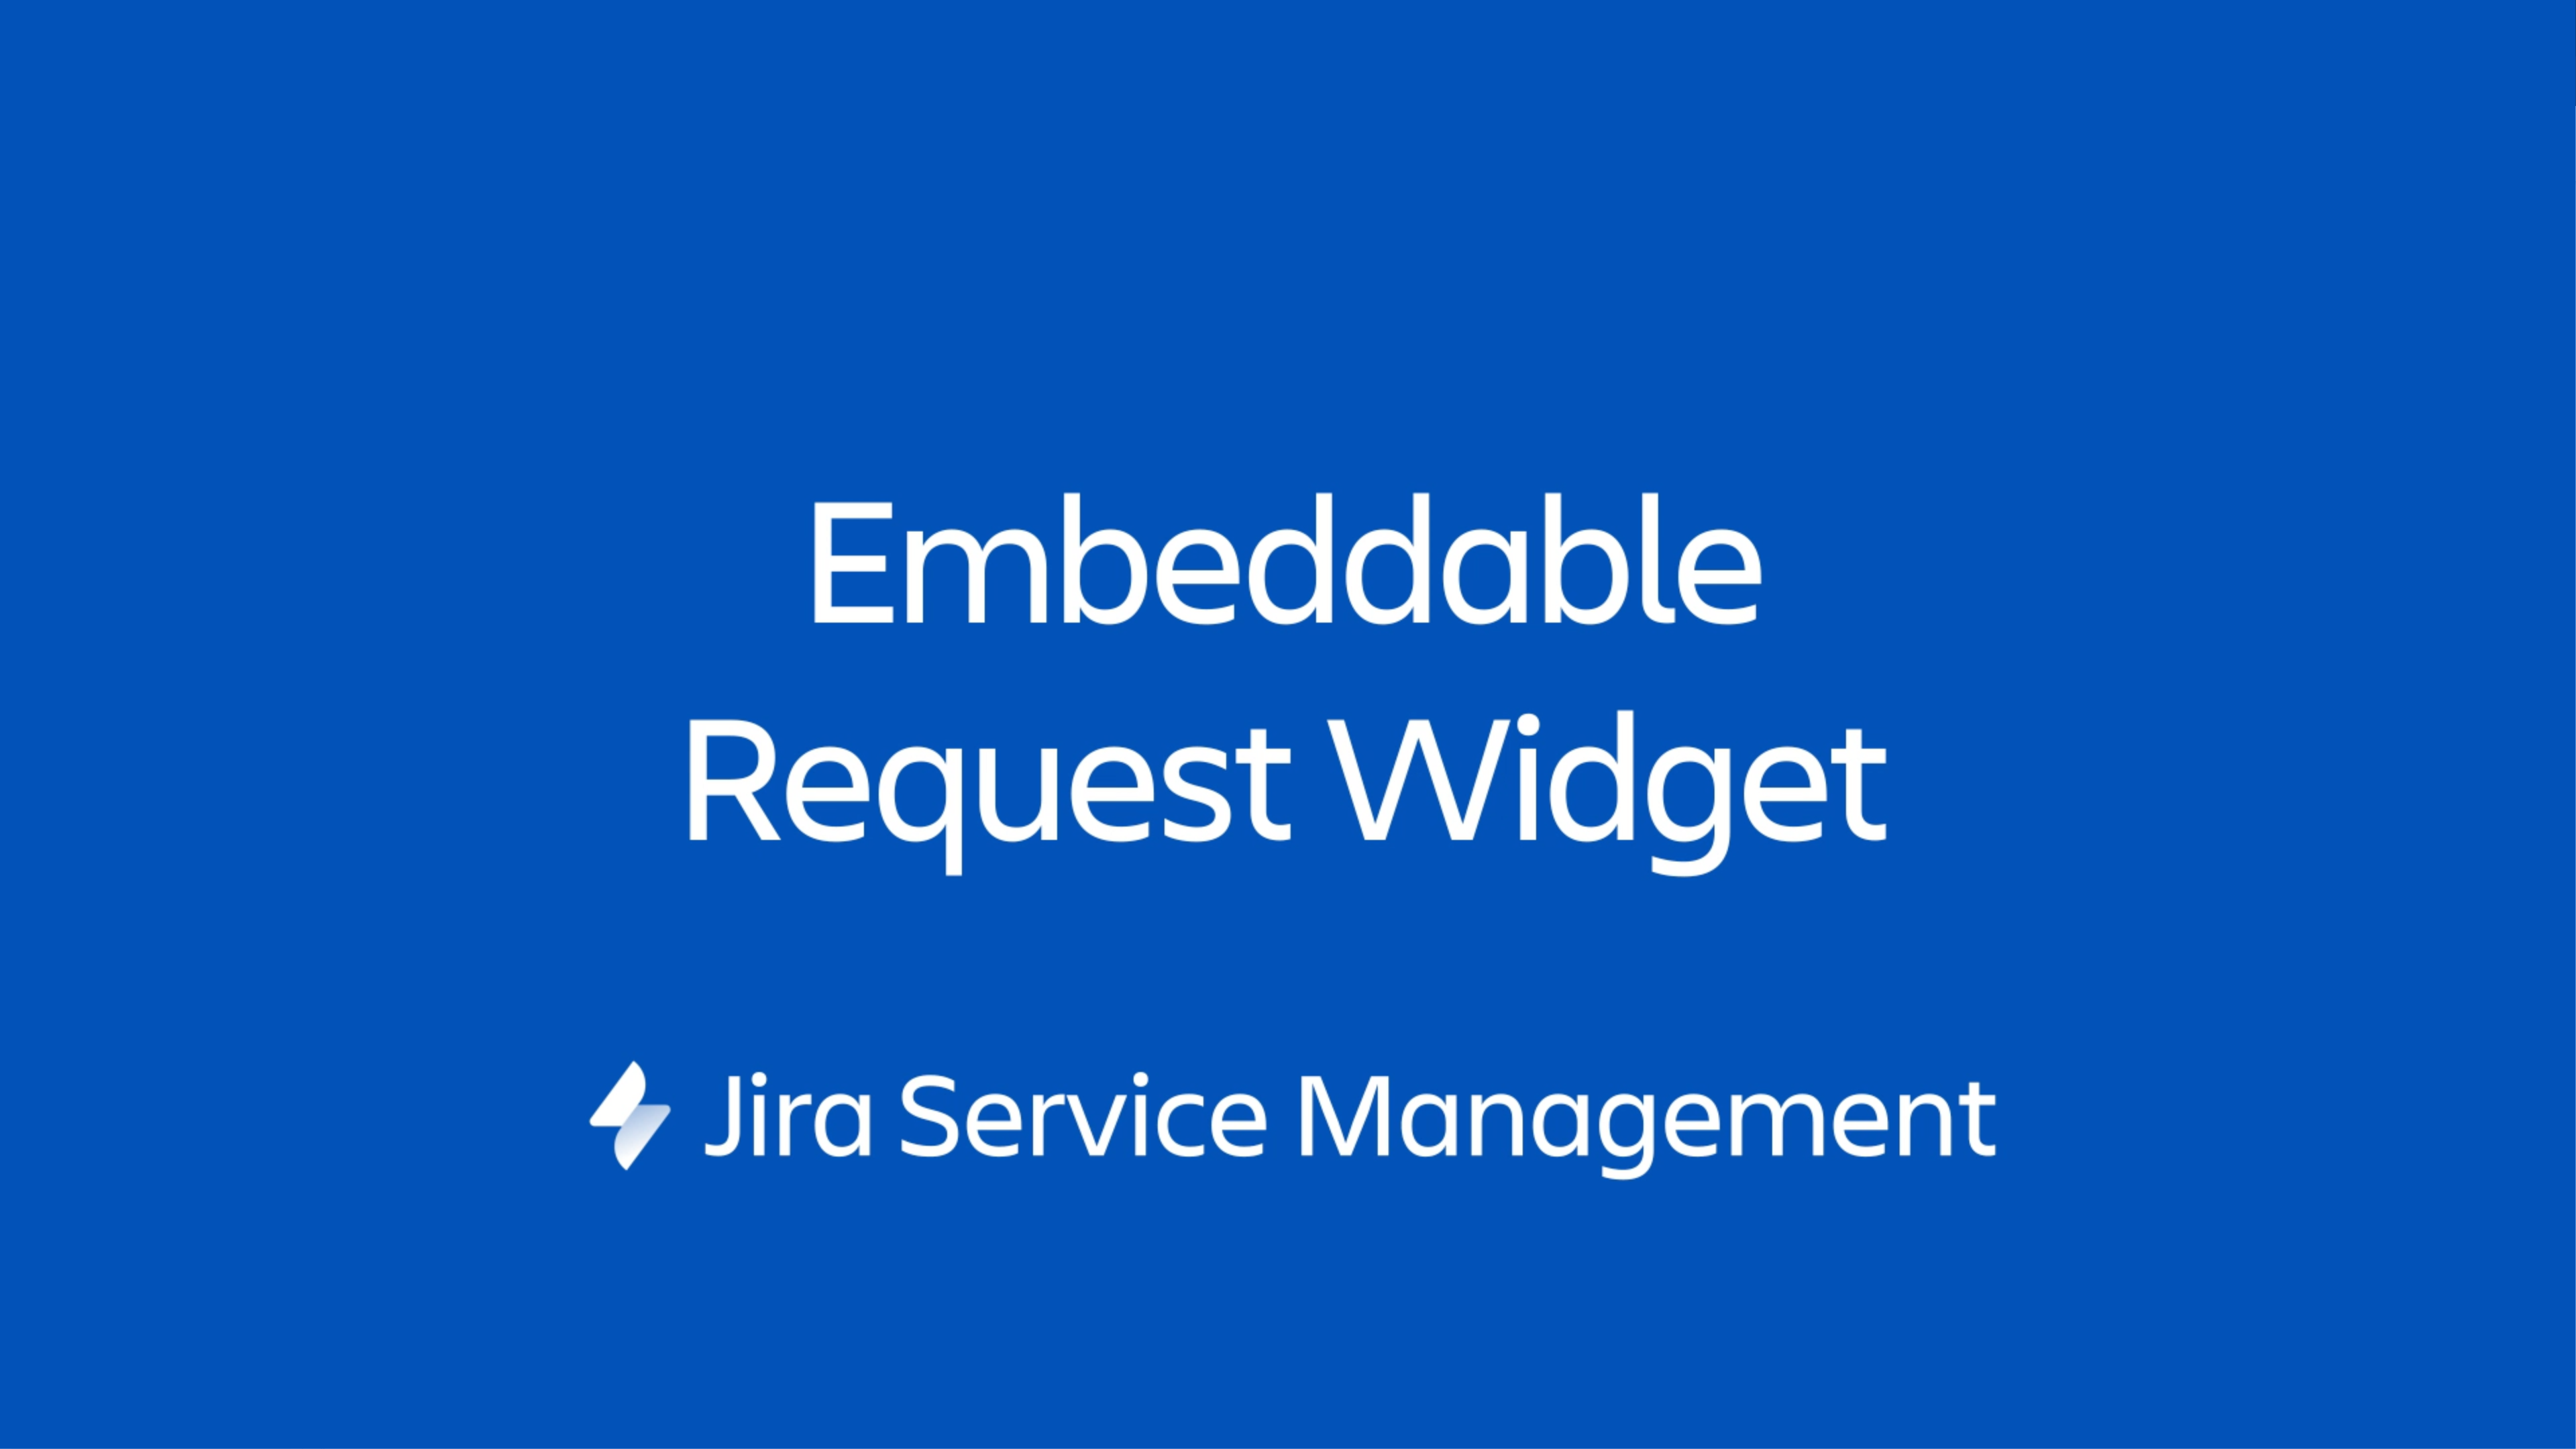 Un widget Jira Service Management est un portail miniature qui peut être intégré à n'importe quelle page web dont vous avez le contrôle.